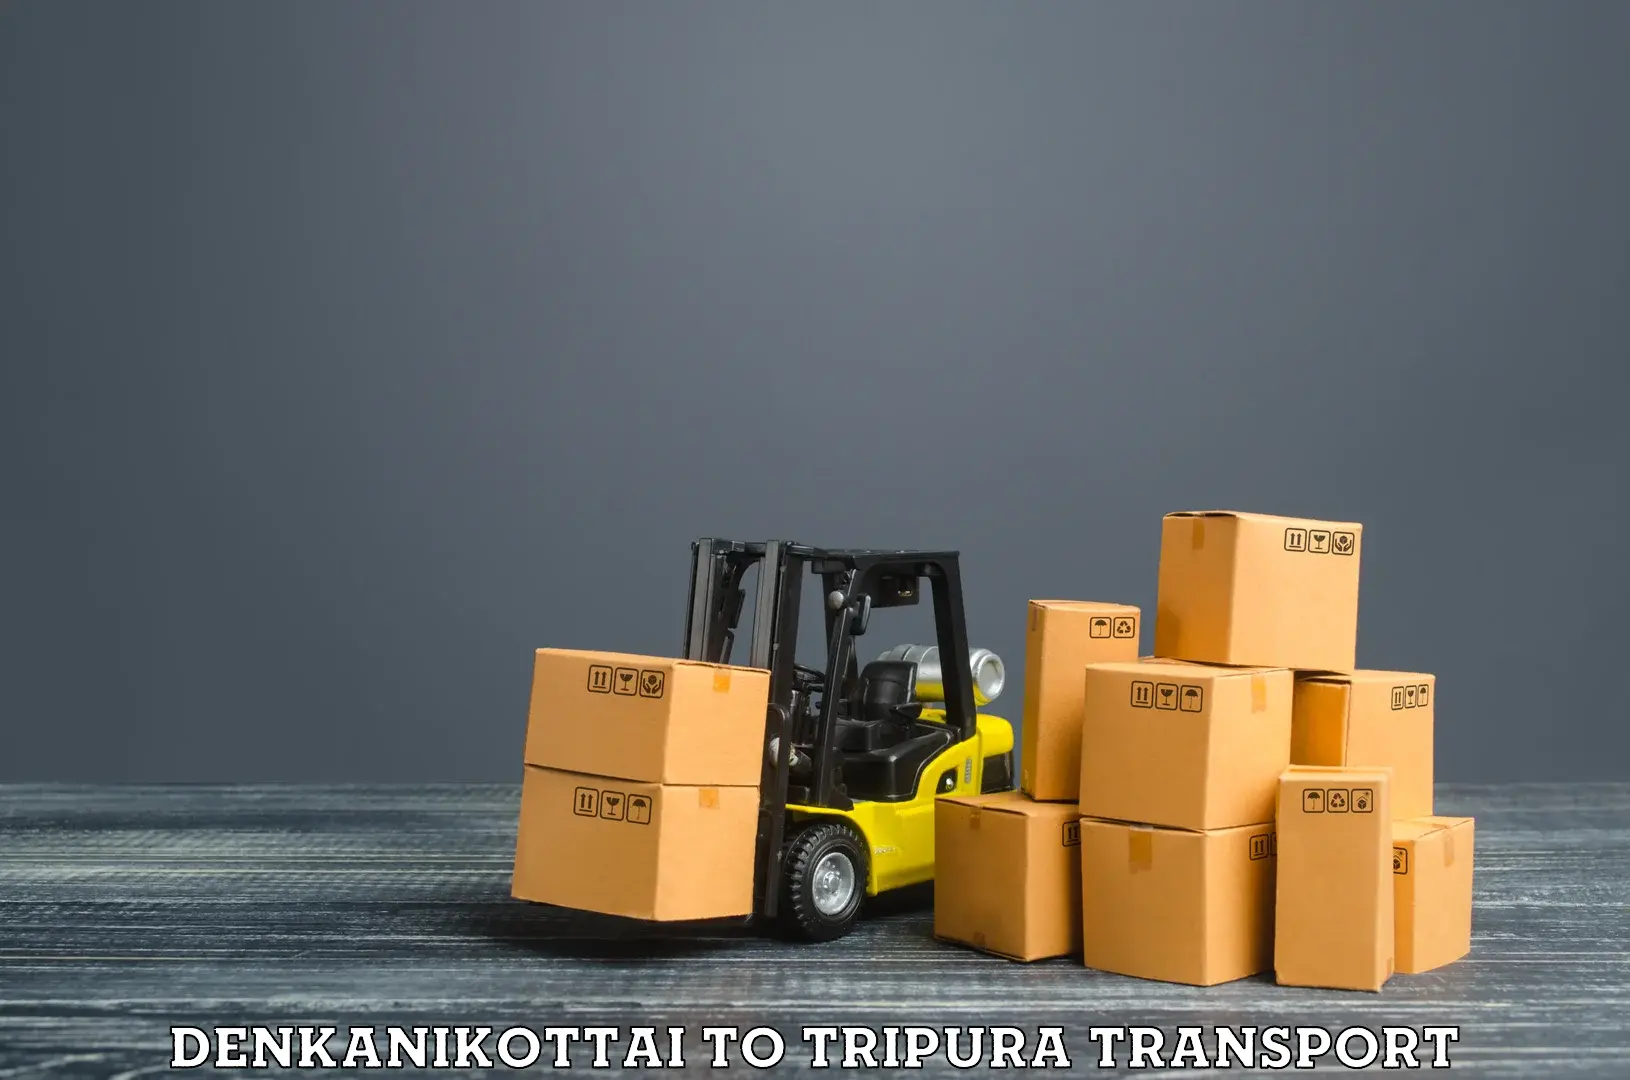 Road transport online services Denkanikottai to Manu Bazar